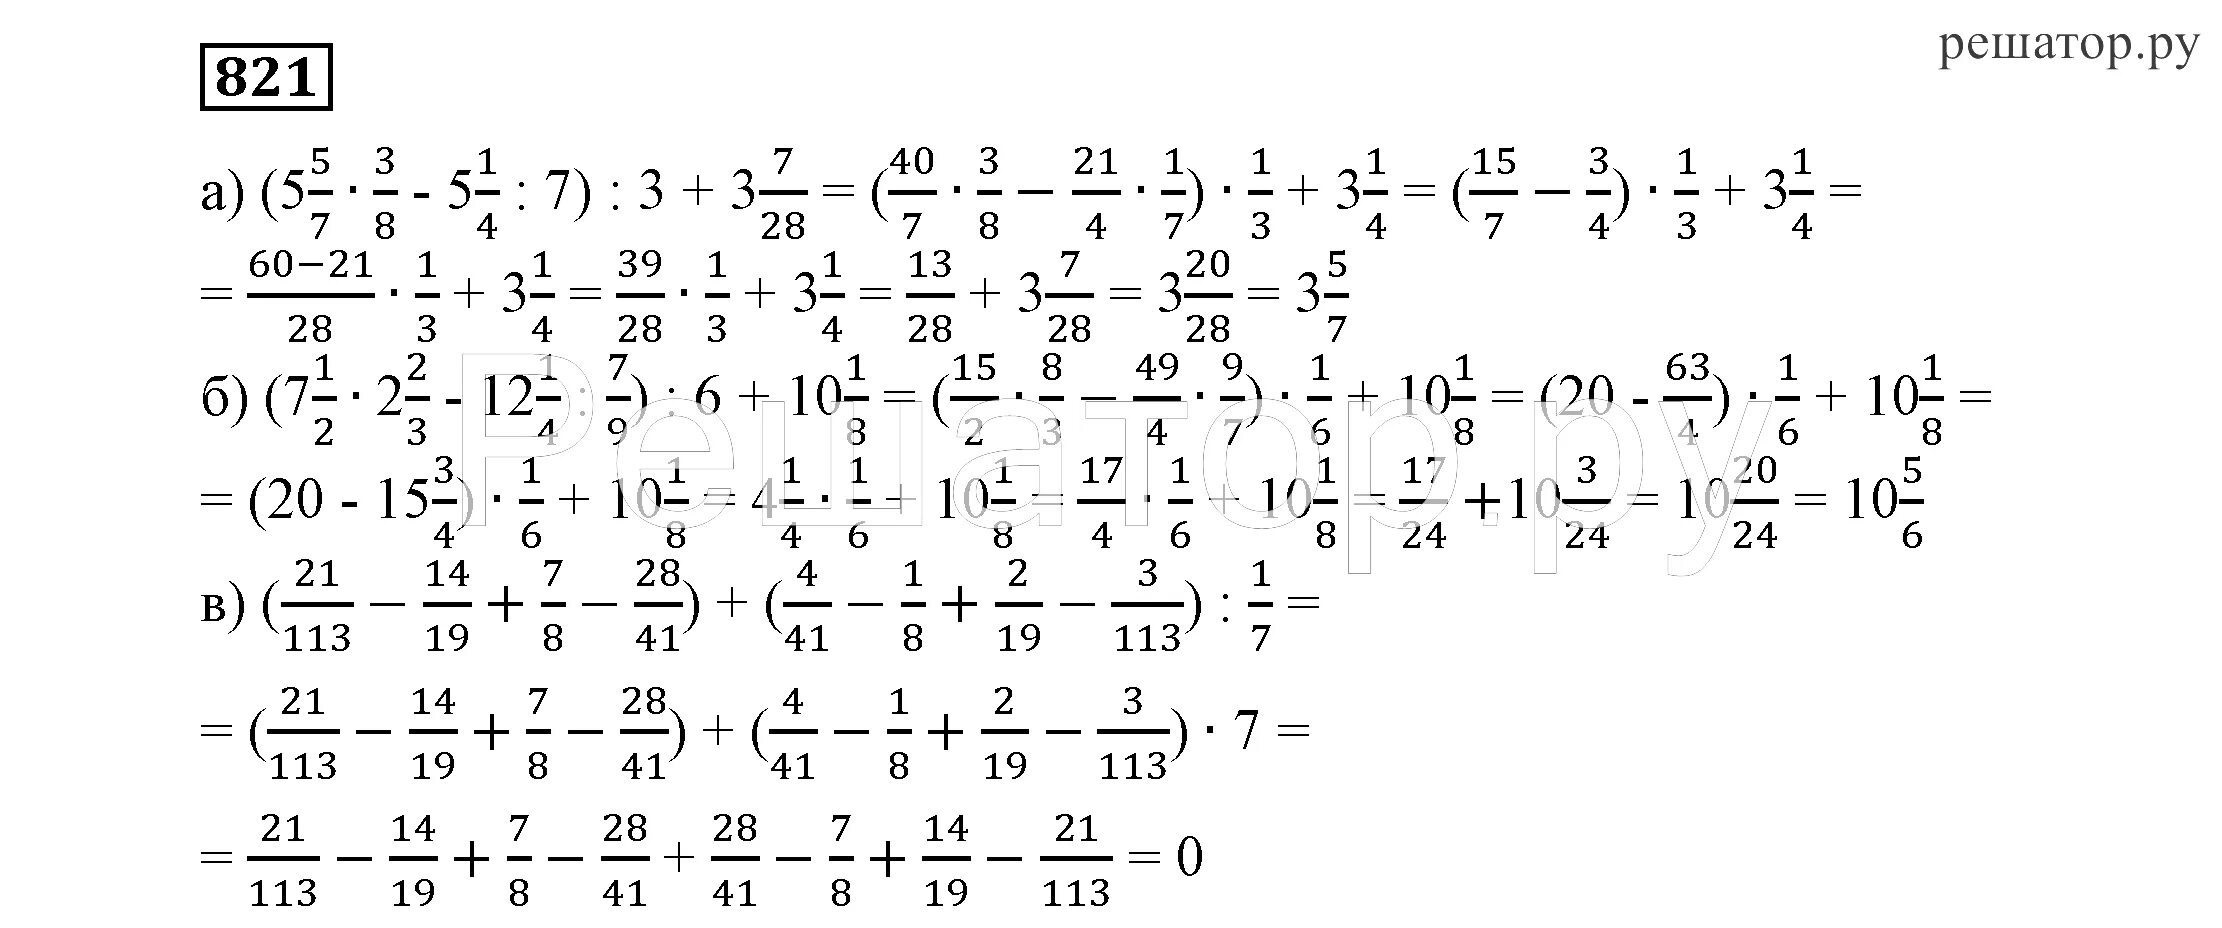 Решебник алгебра 7 класс никольского. Повторение алгебры за 7 класс. Повторение Алгебра 7 класс Никольский. Алгебра 7 класс Никольский номер 821. Алгебра седьмой класс номер 821.